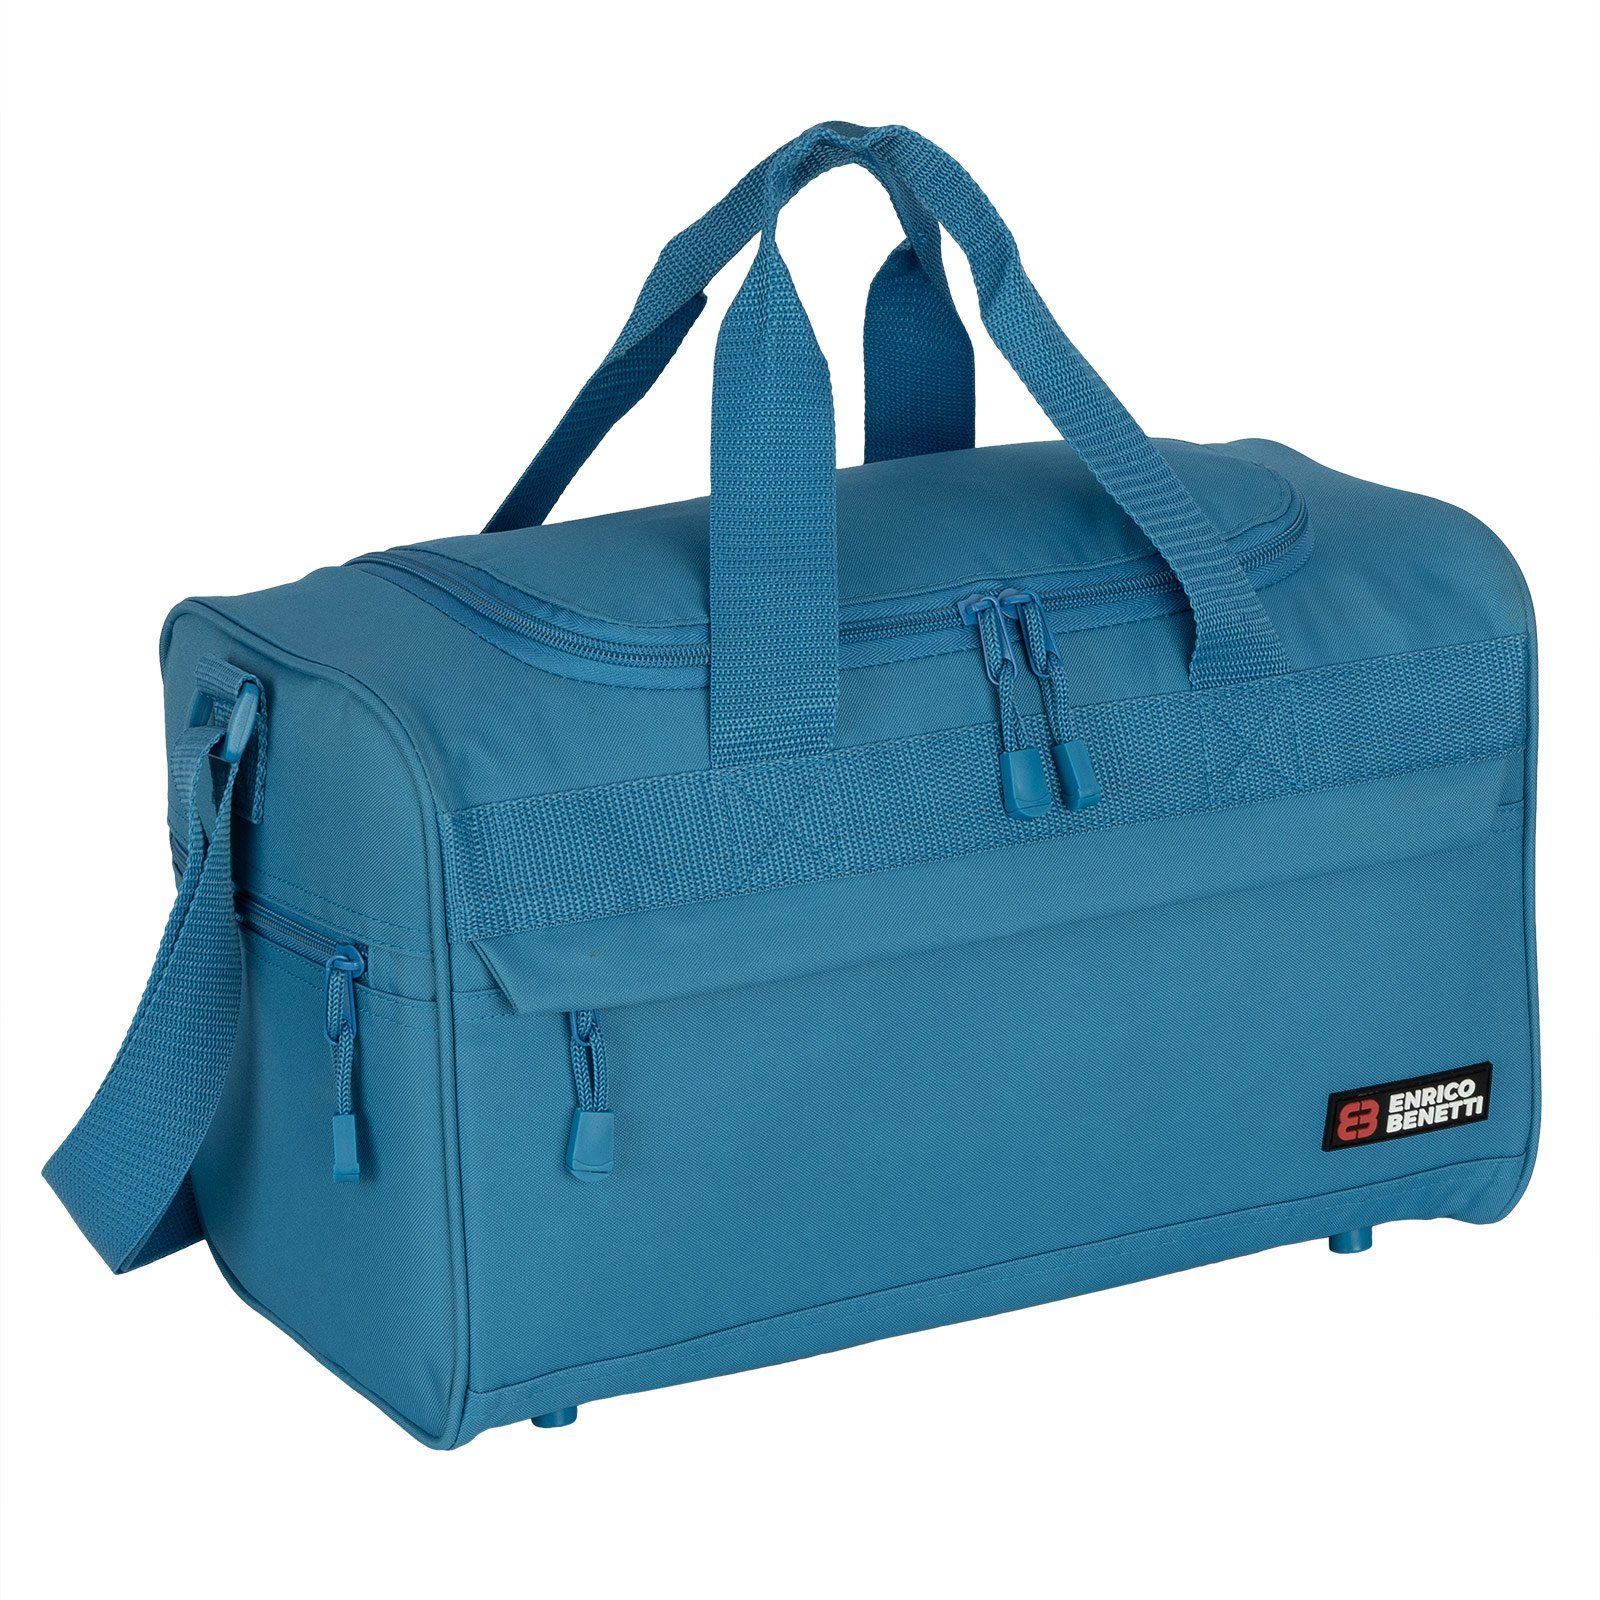 EAAKIE Reisetasche 22 L Reisetasche Saunatasche Sporttasche Fitnesstasche Damen Herren SKY-BLUE